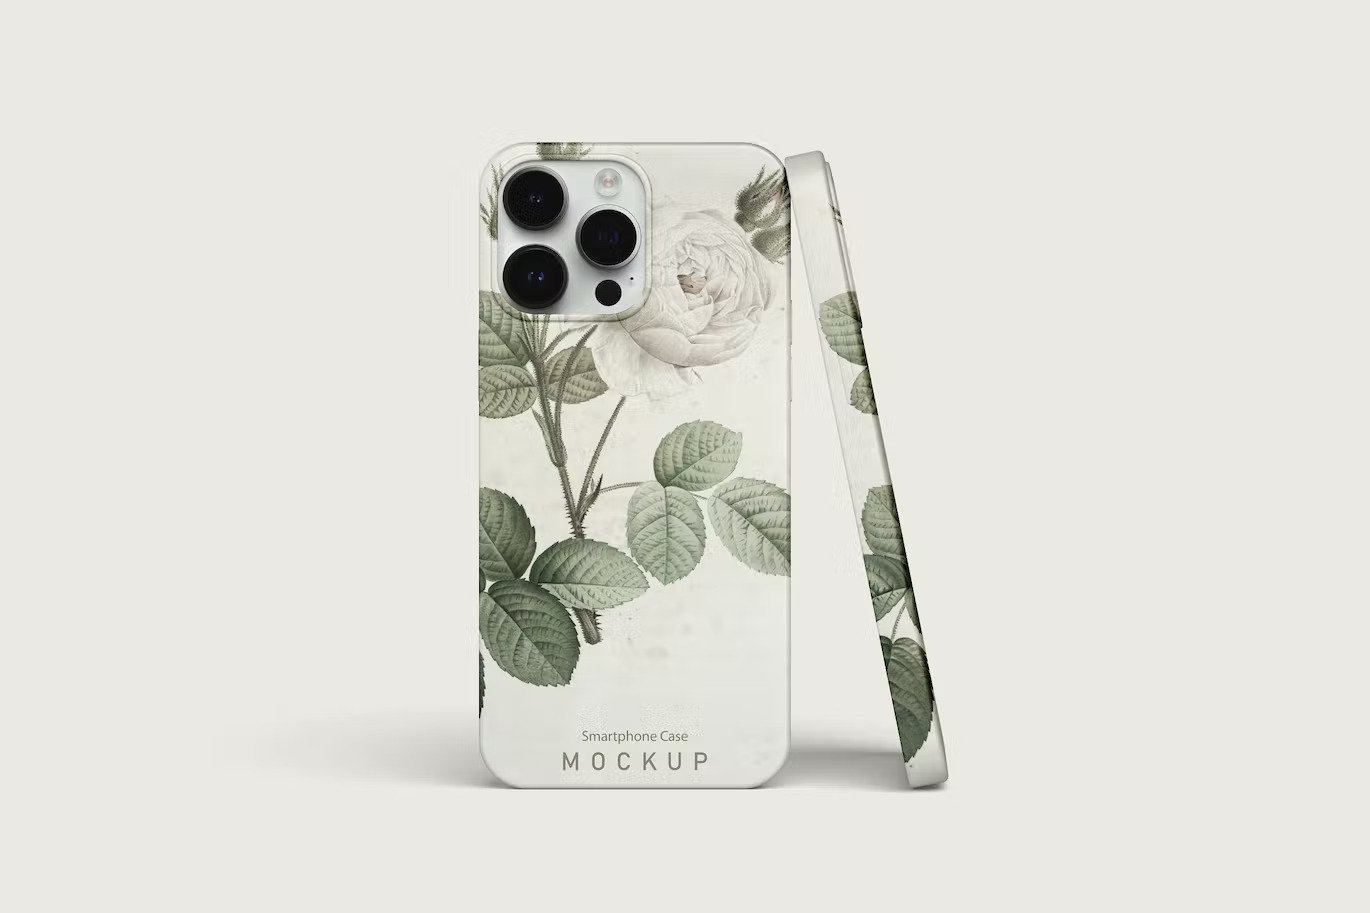 Modern smartphone case mockup set